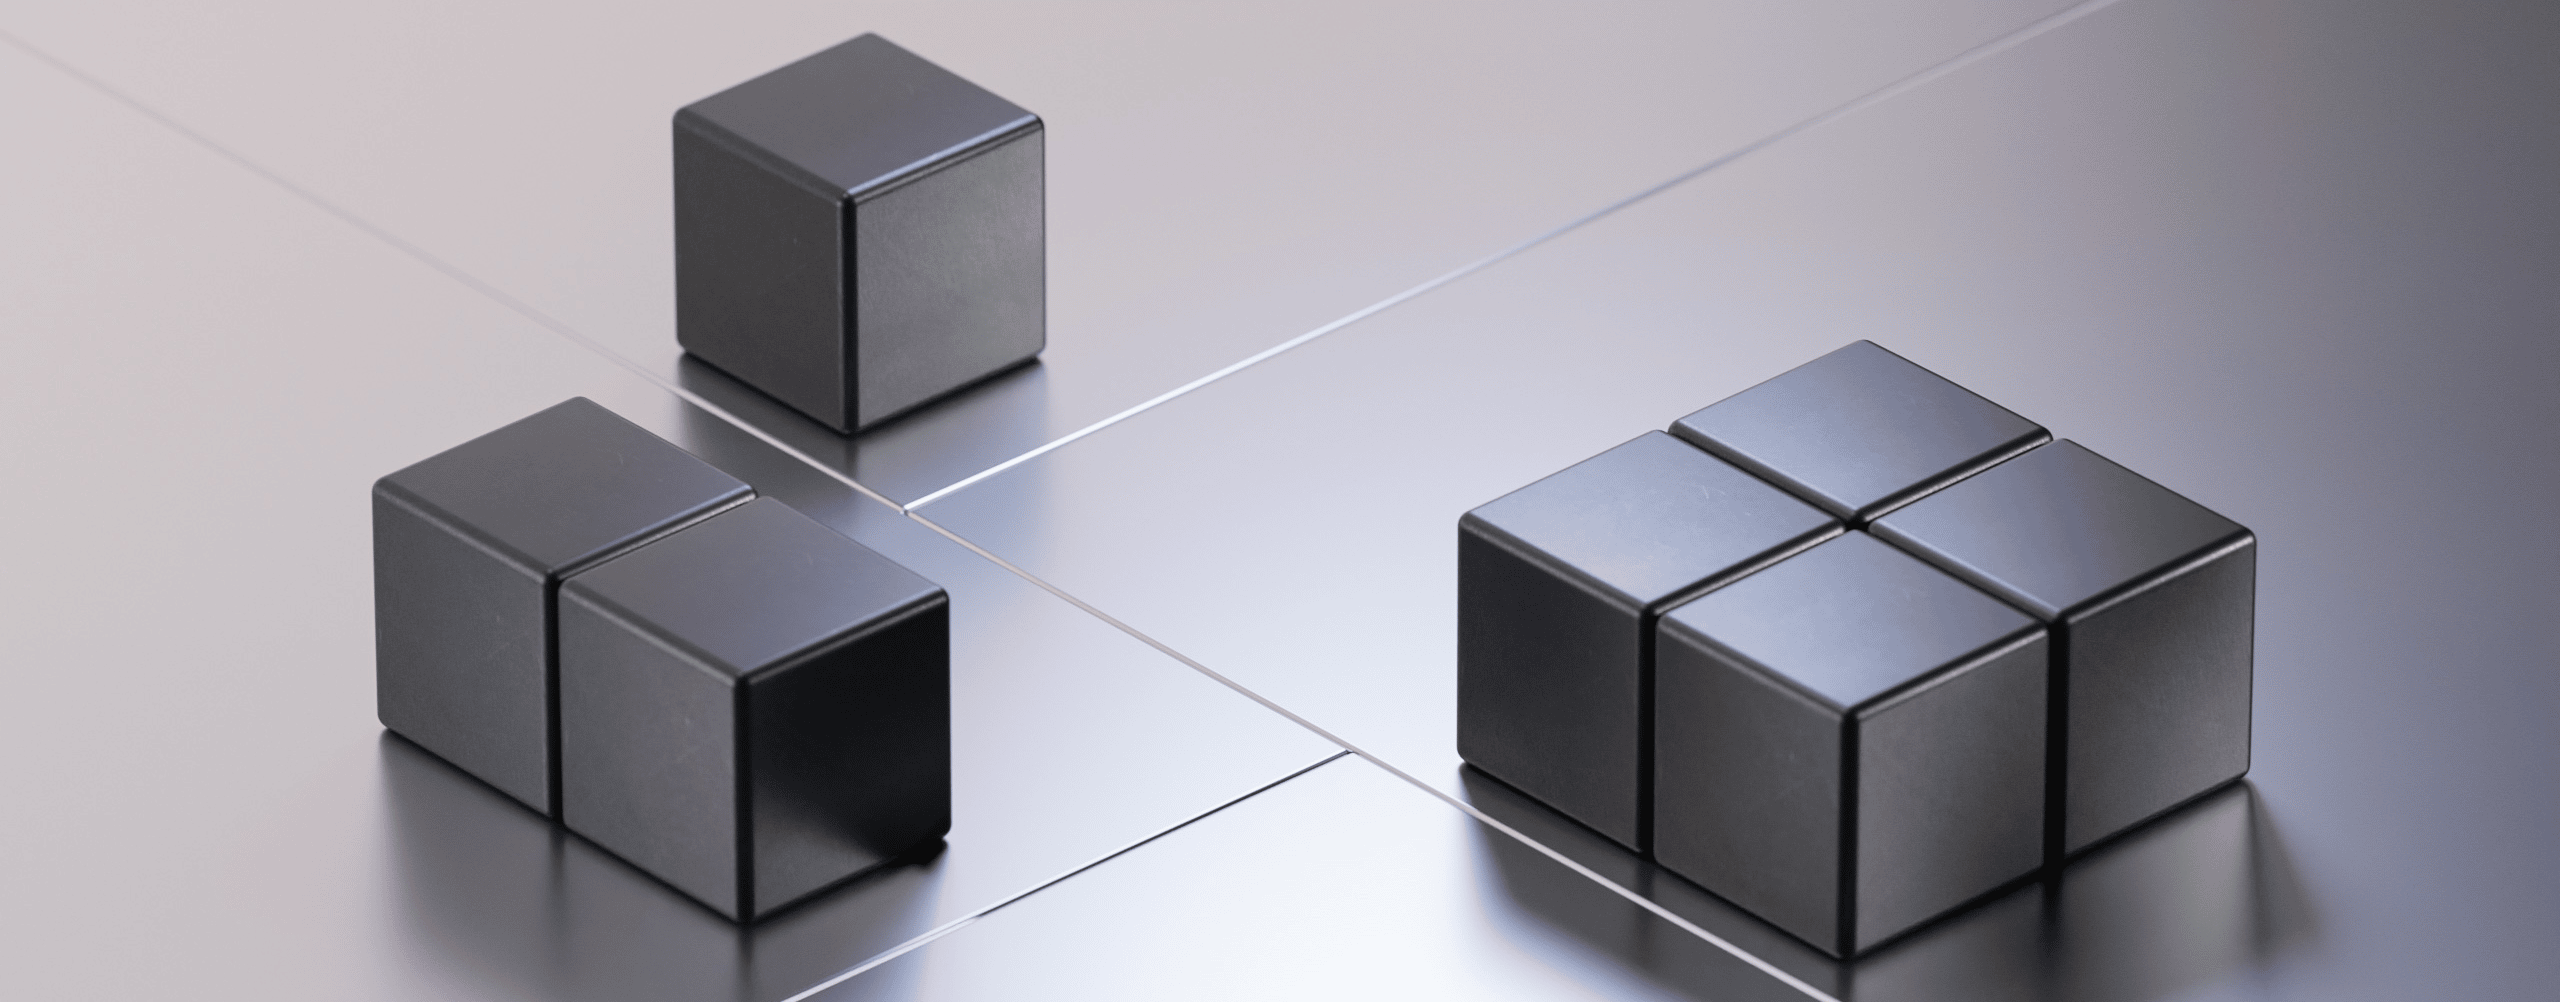 quality management solution cubes